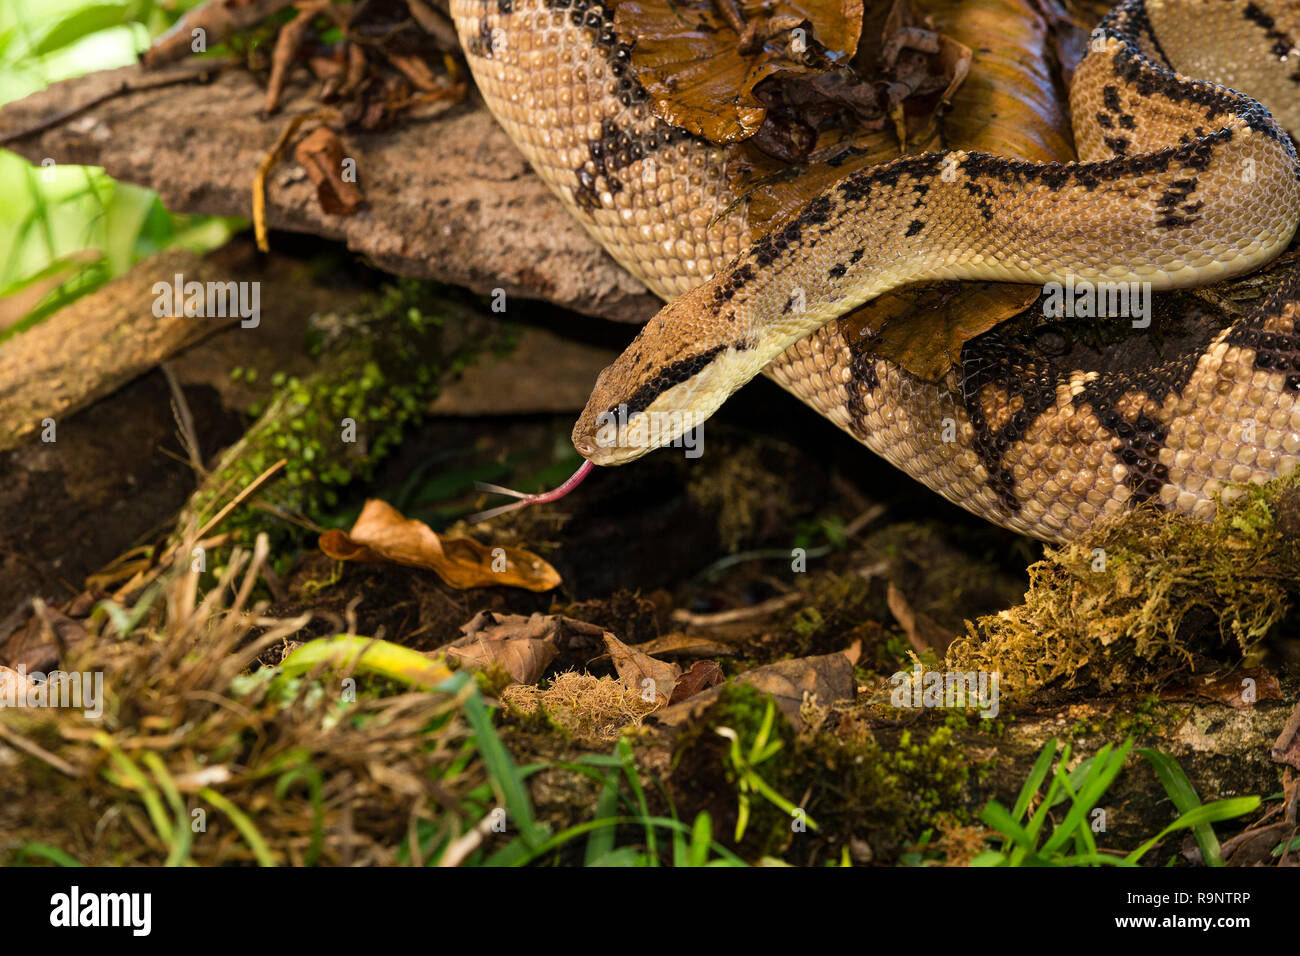 Bushmaster snake in Costa Rica Stock Photo